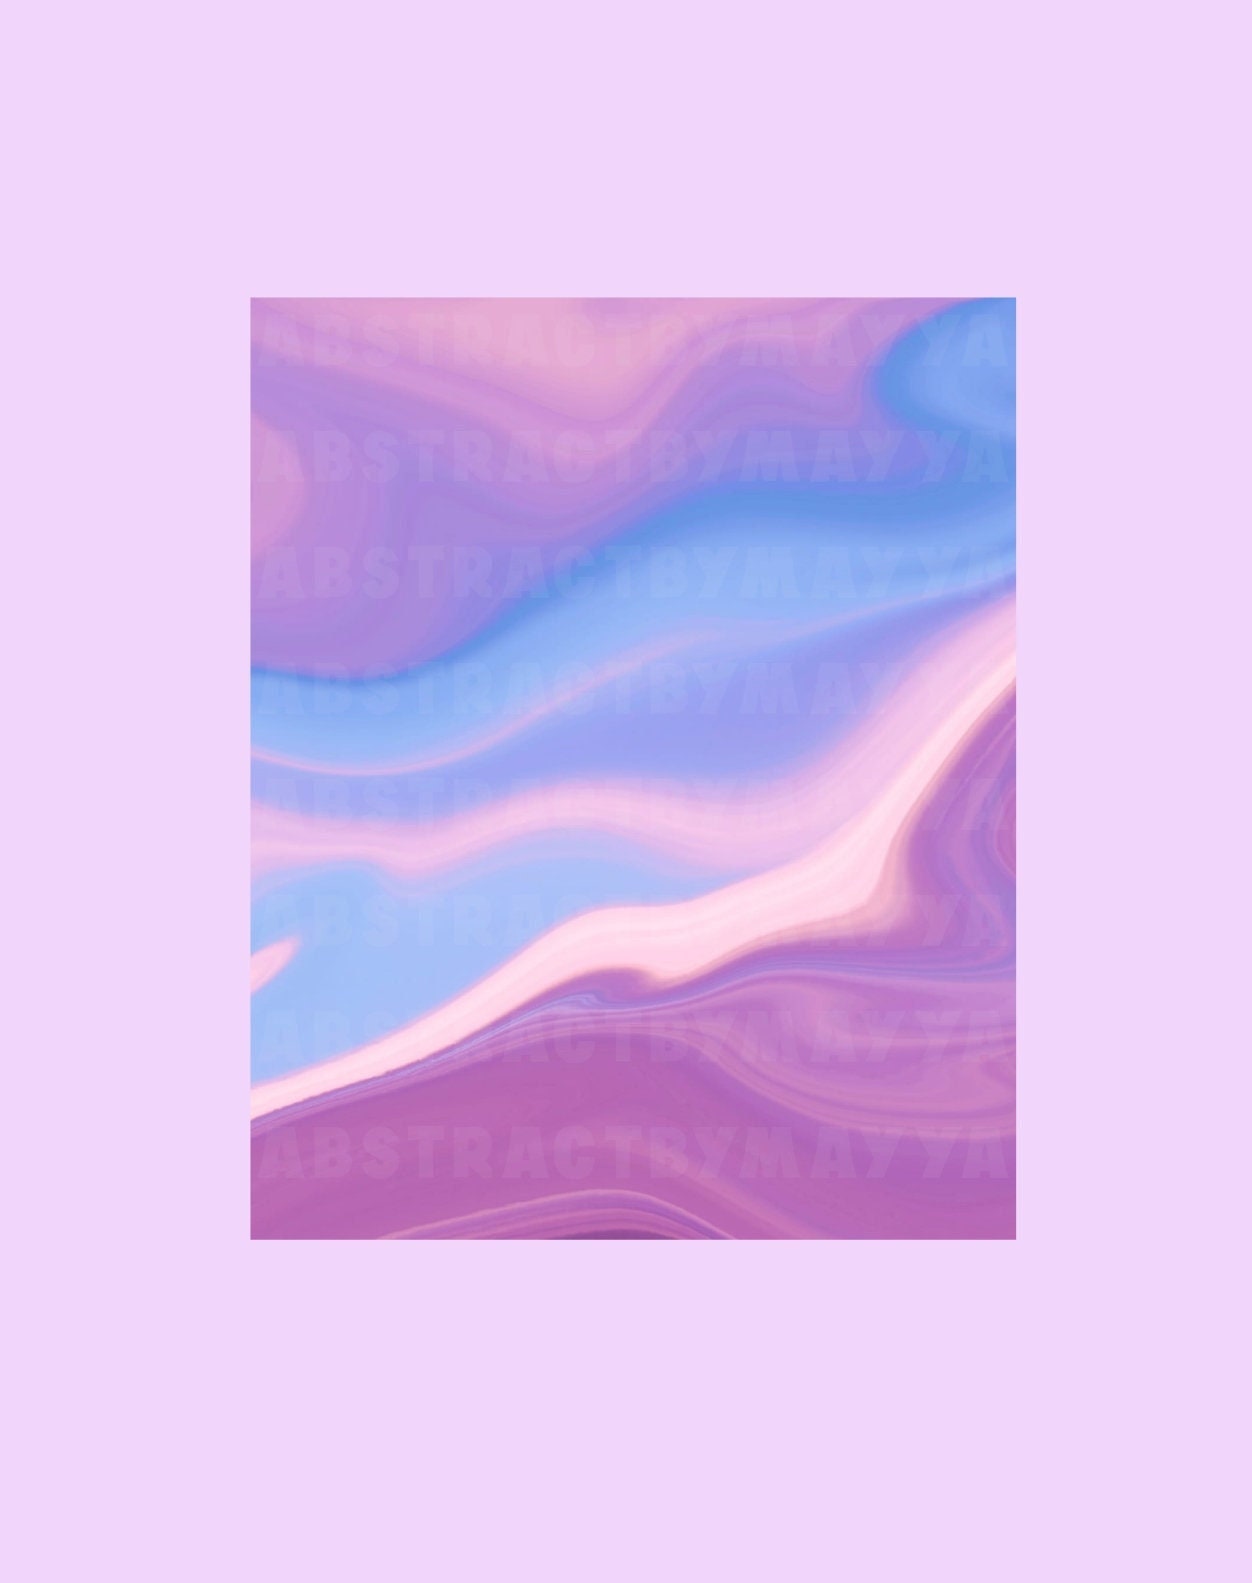 Pastel Pink Wallpapers on WallpaperDog